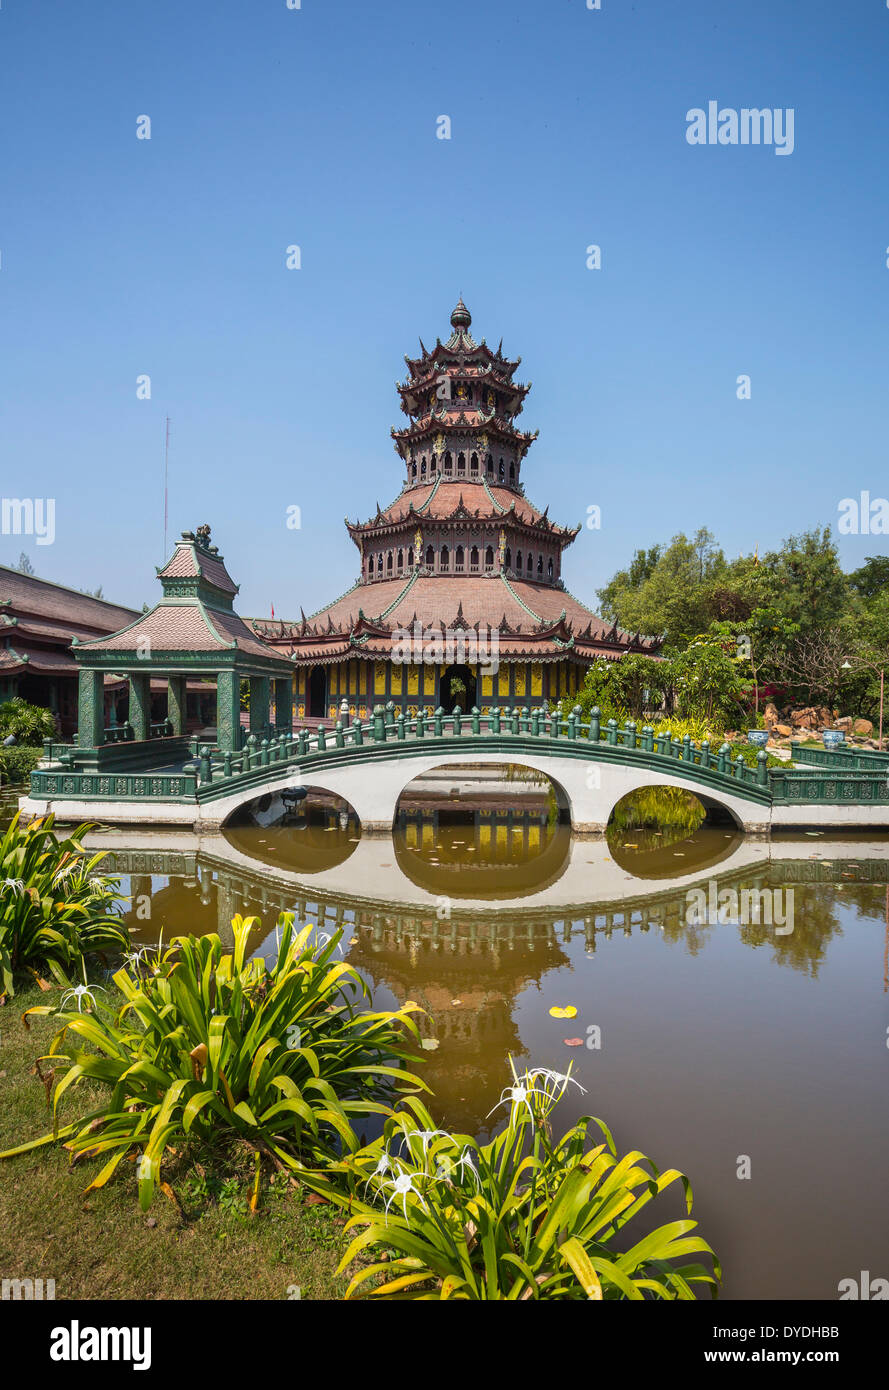 Thailand, Asia, Bangkok, Ancient, Siam Park, The Phra Kaew, architecture, bridge, culture, park, pavilion, pond Stock Photo